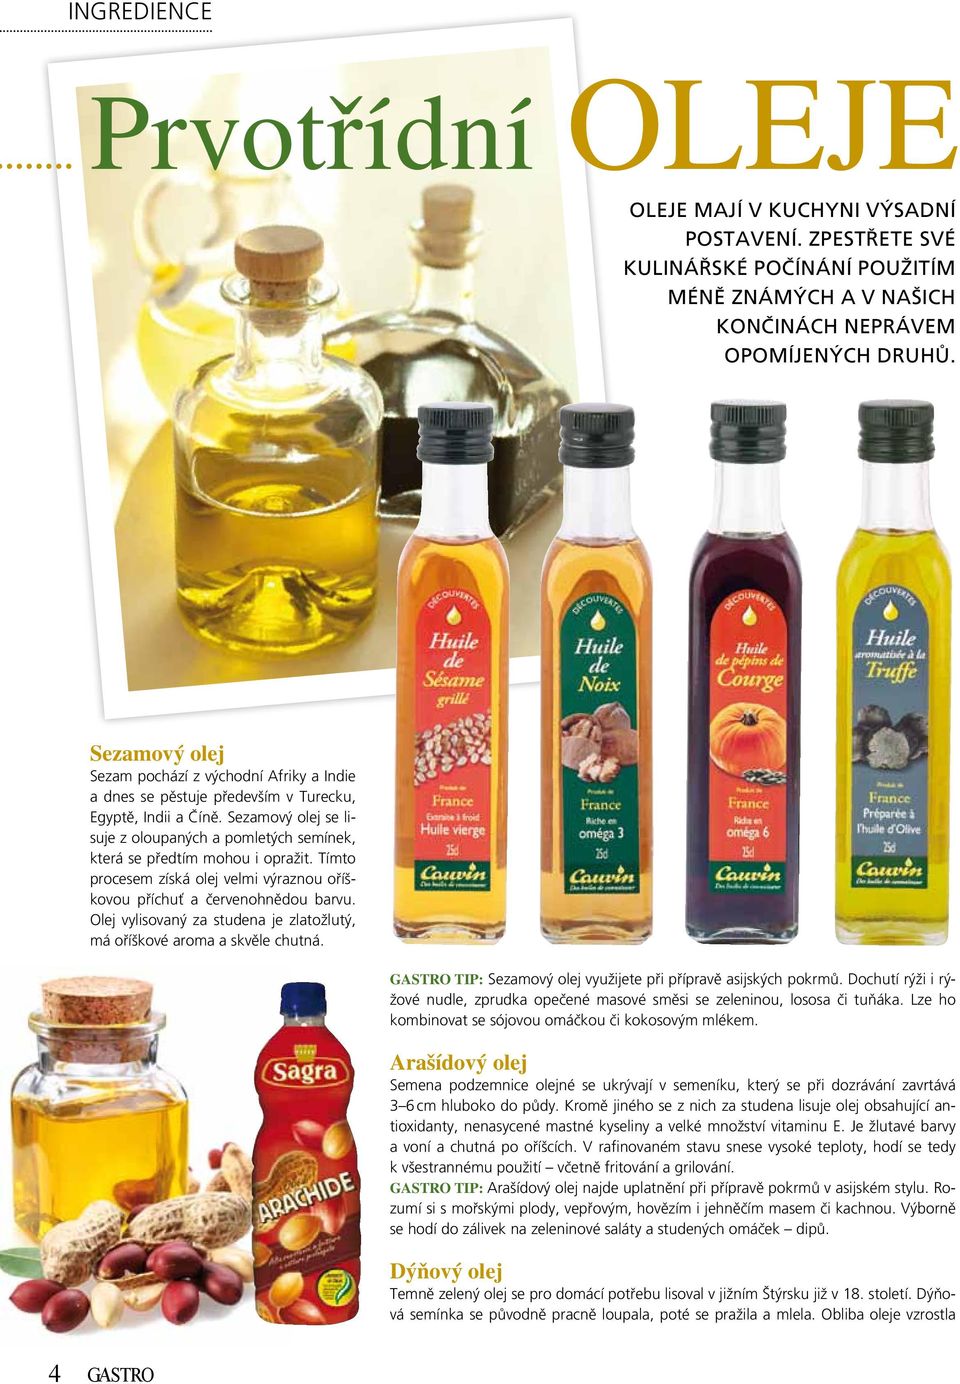 Sezamový olej se lisuje z oloupaných a pomletých semínek, která se předtím mohou i opražit. Tímto procesem získá olej velmi výraznou oříškovou příchuť a červenohnědou barvu.